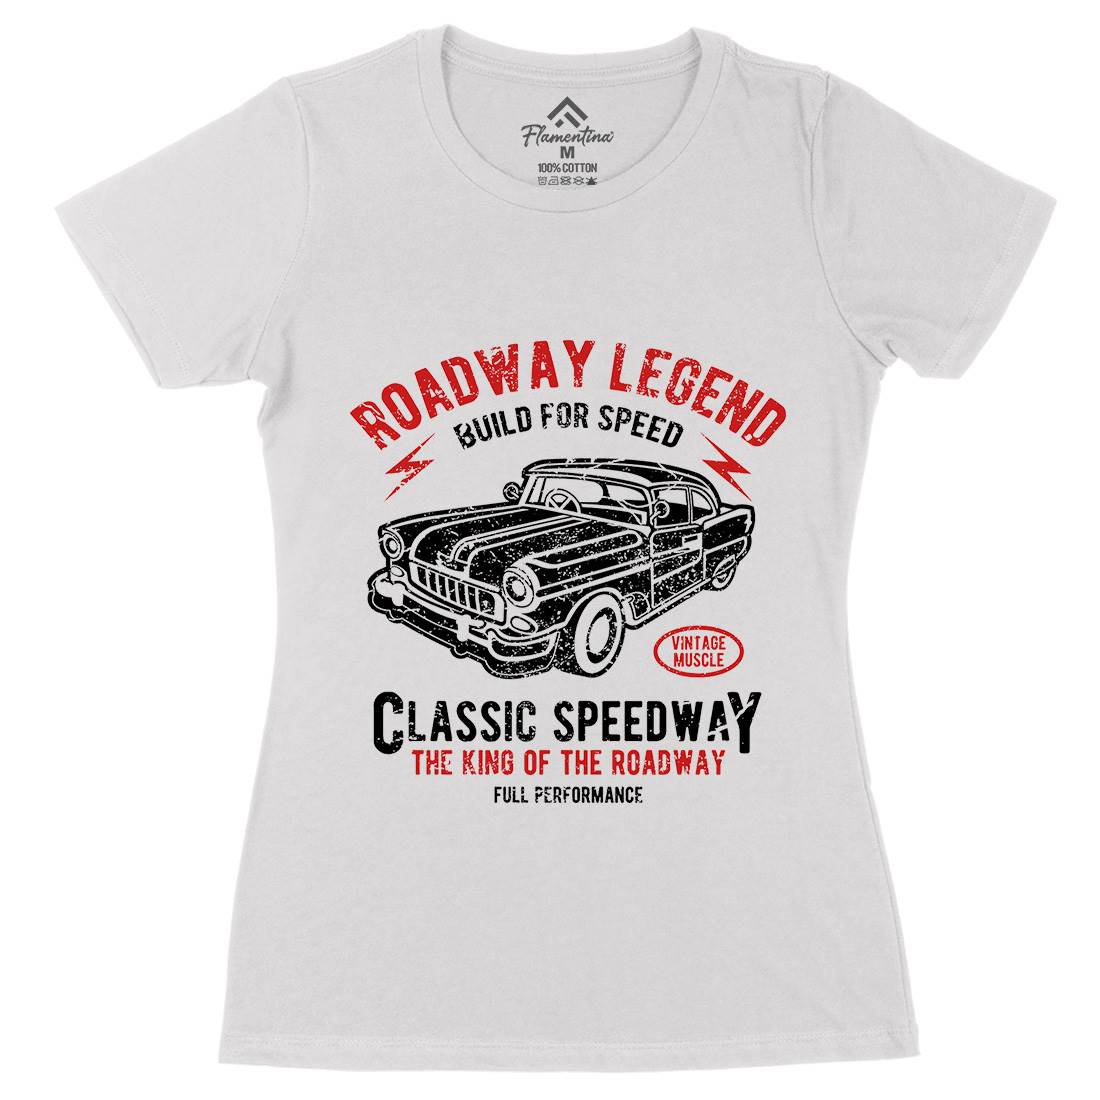 Roadway Legend Womens Organic Crew Neck T-Shirt Cars A124